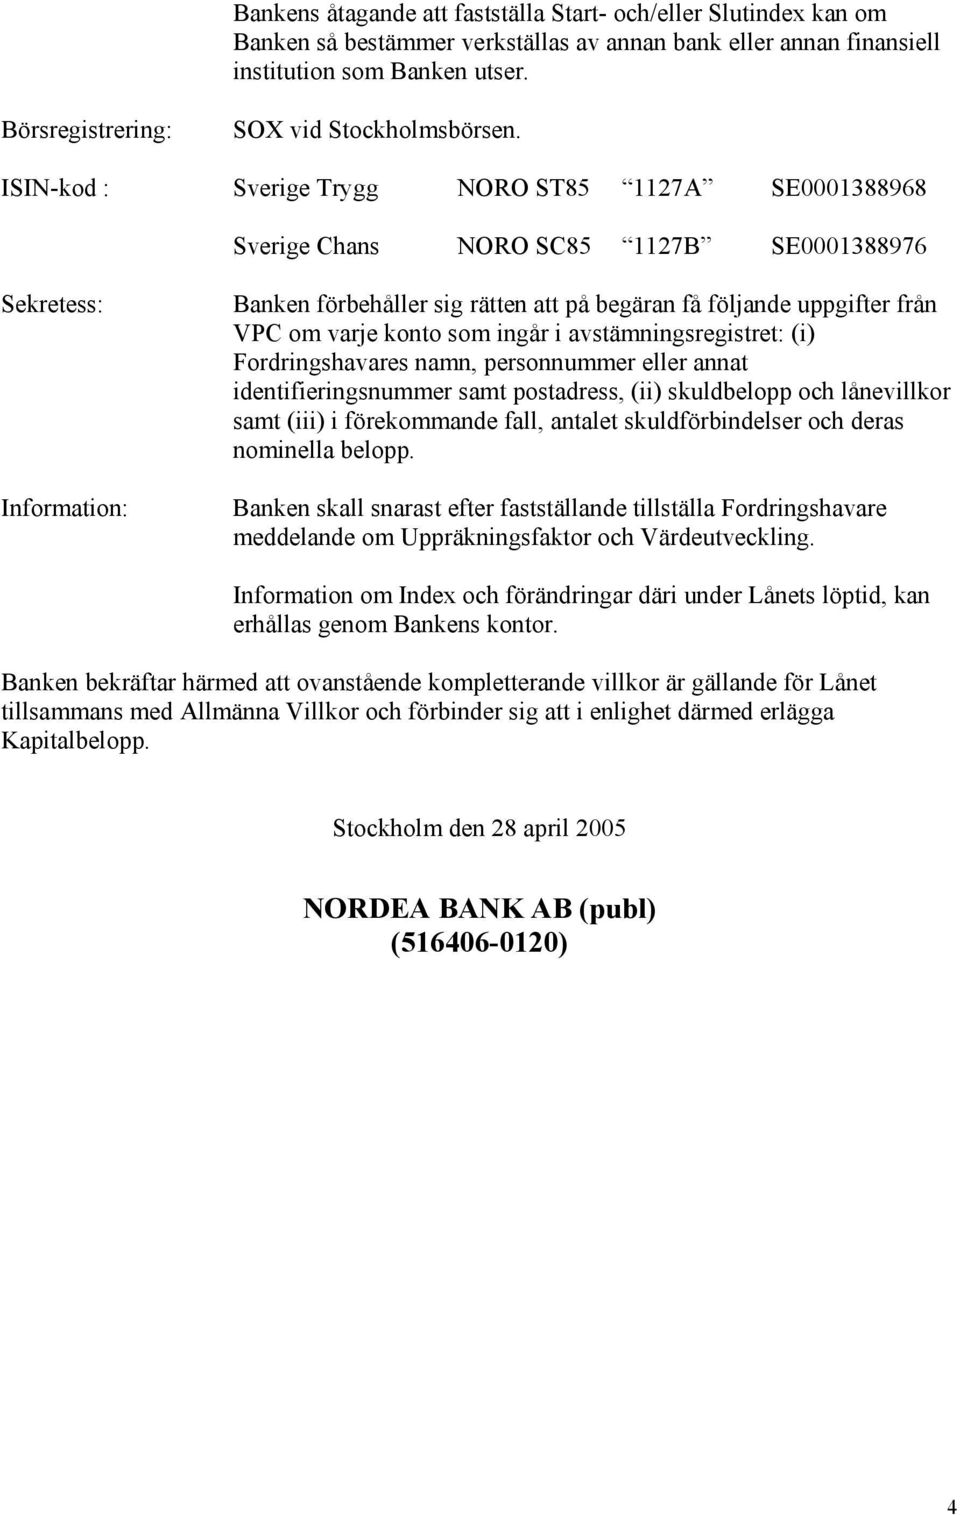 ISIN-kod : Sverige Trygg NORO ST85 1127A SE0001388968 Sverige Chans NORO SC85 1127B SE0001388976 Sekretess: Information: Banken förbehåller sig rätten att på begäran få följande uppgifter från VPC om